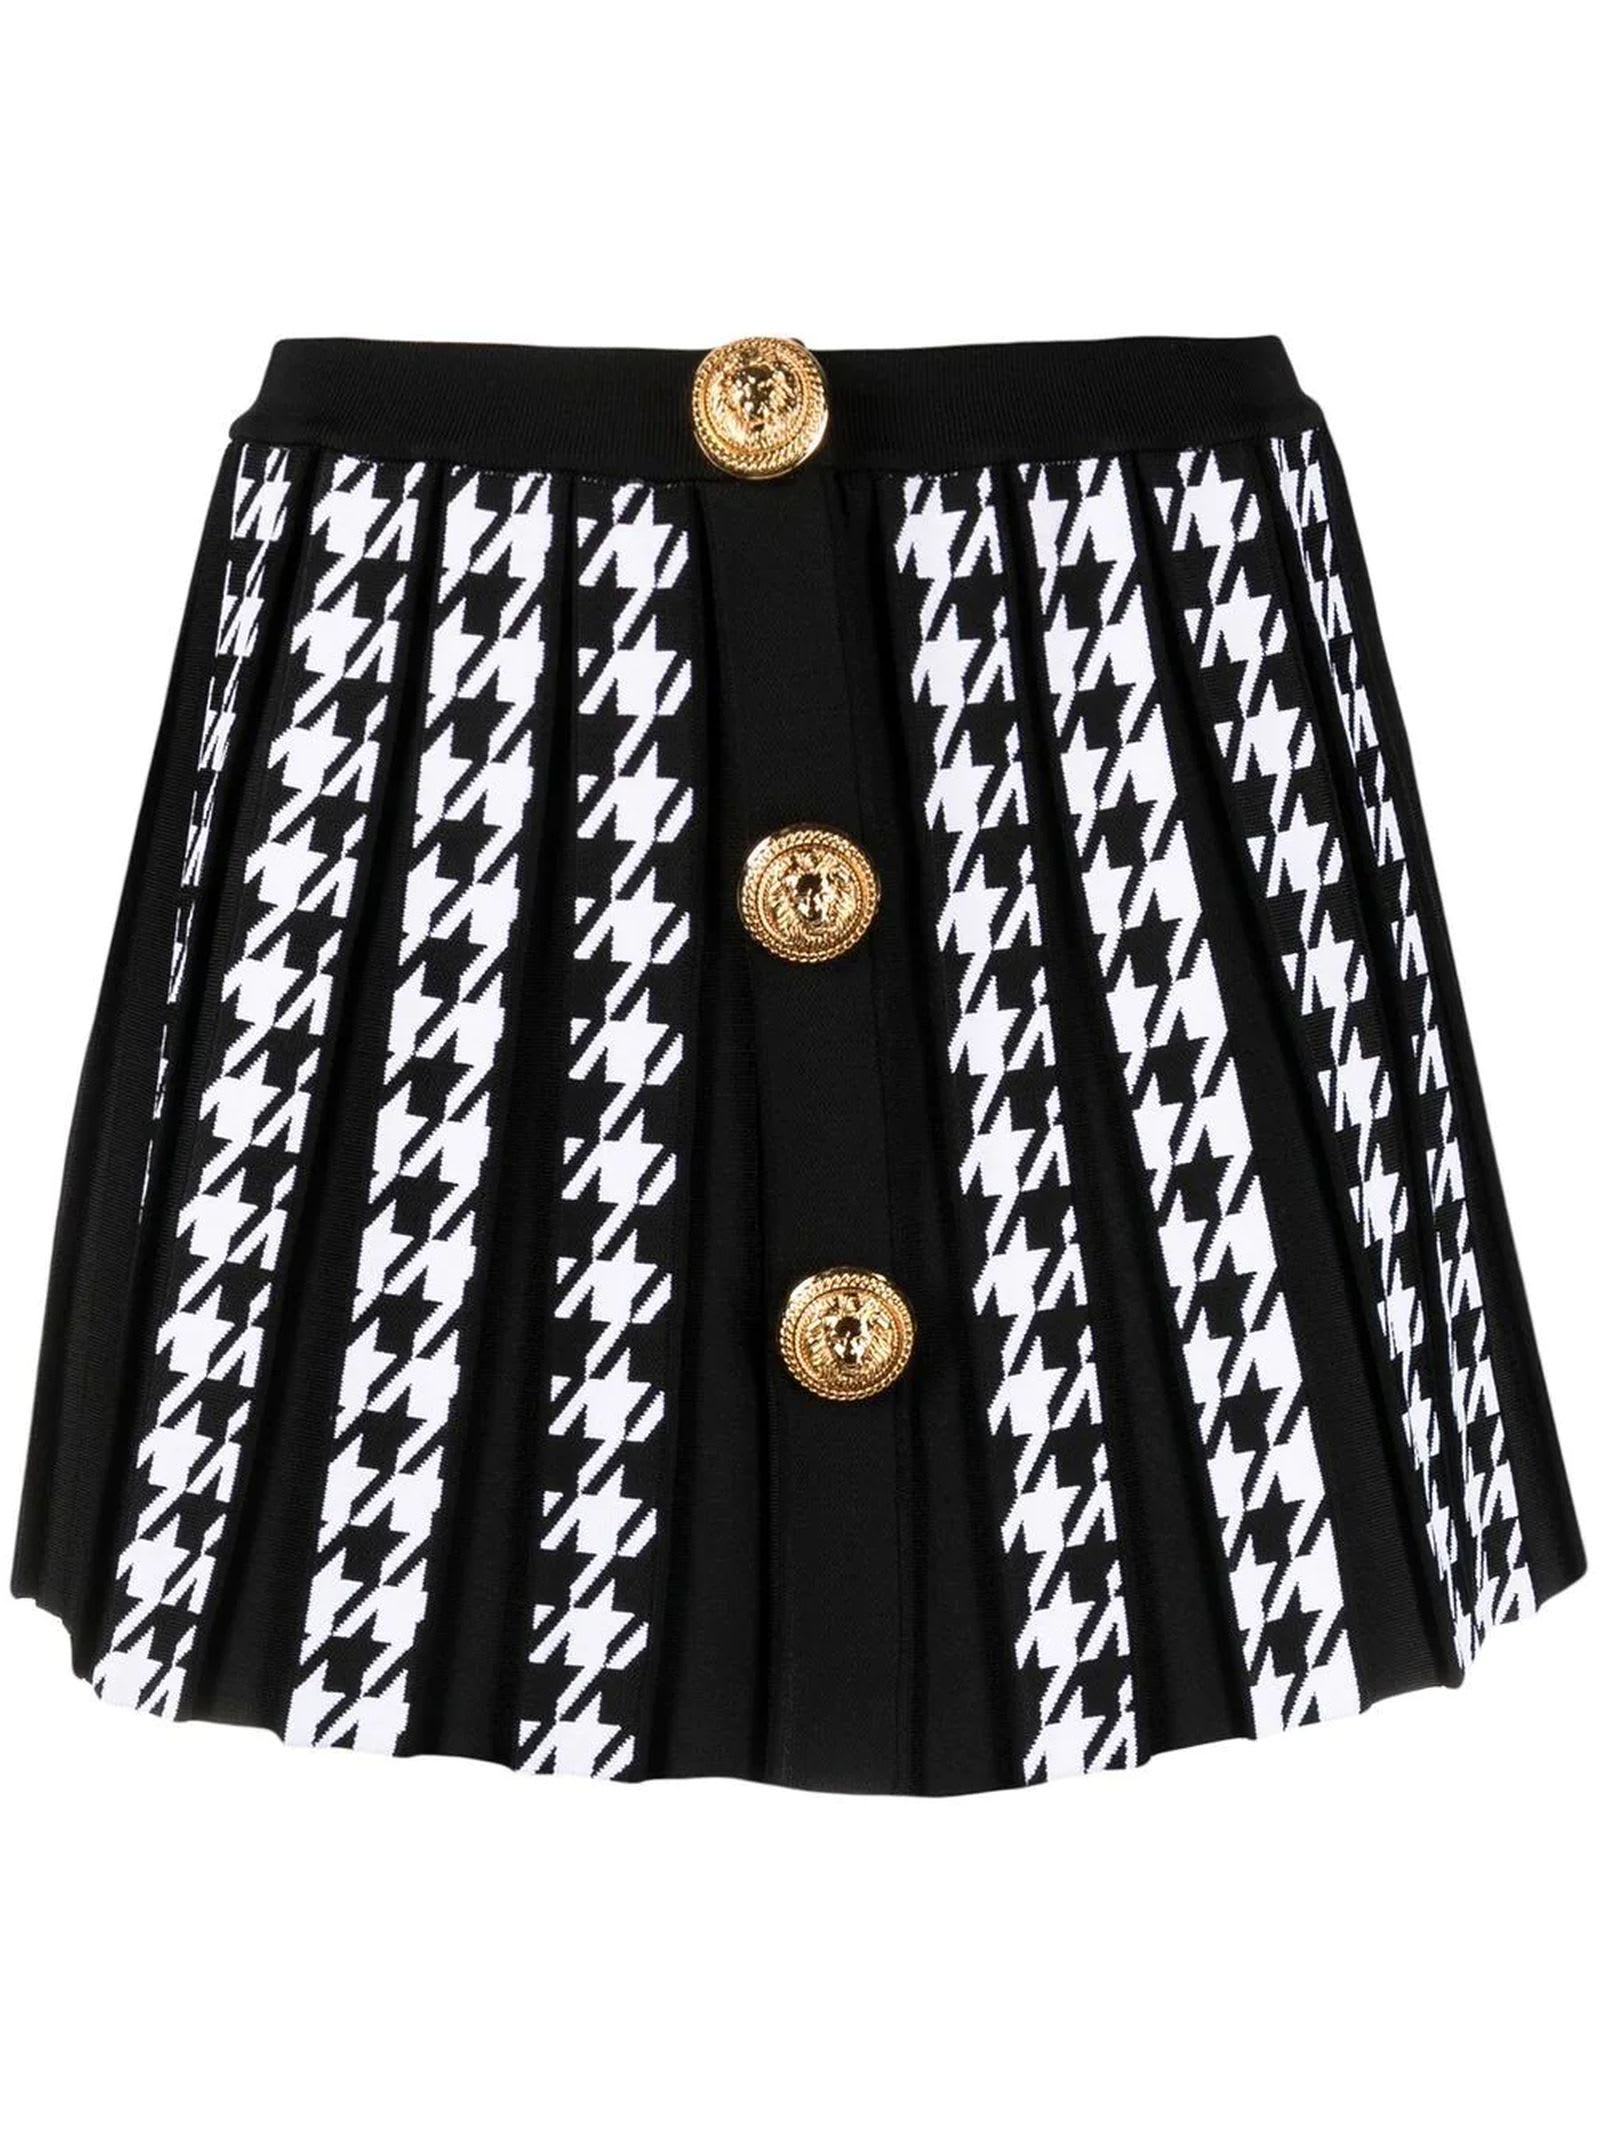 Balmain Black Ad White Short Knit Skirt